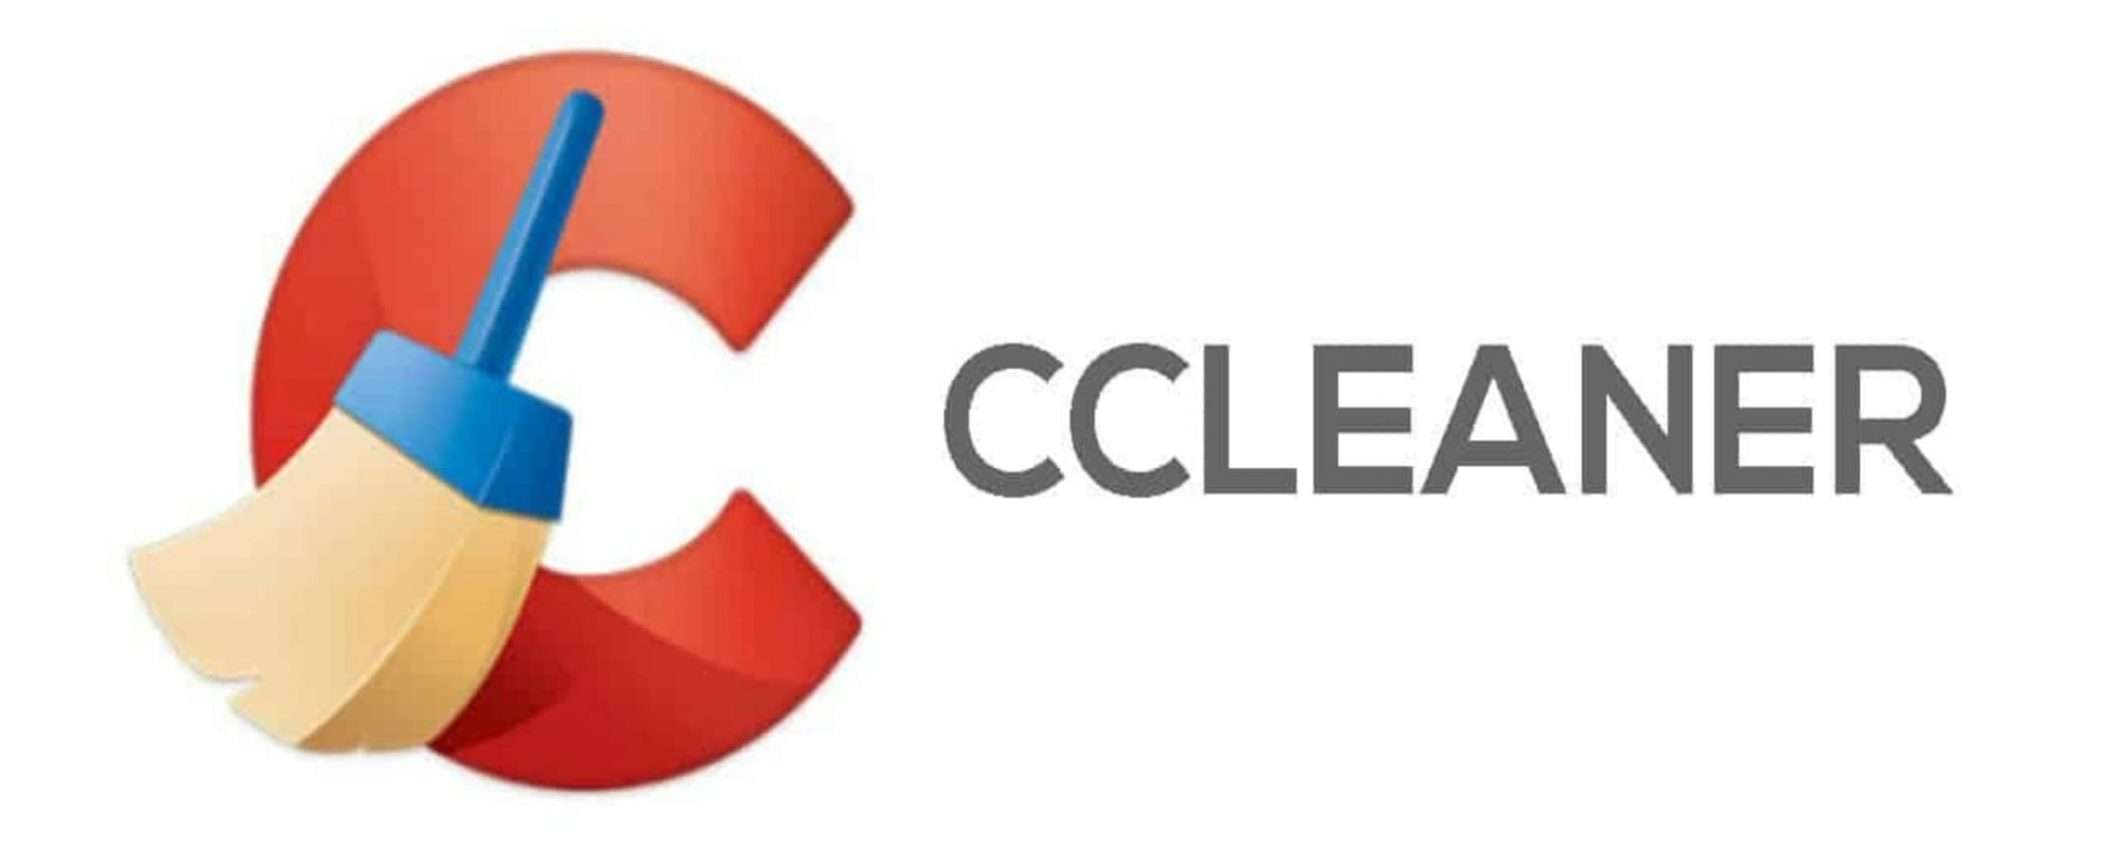 CCleaner Professional, programma per pulire PC a soli 24,95 Euro